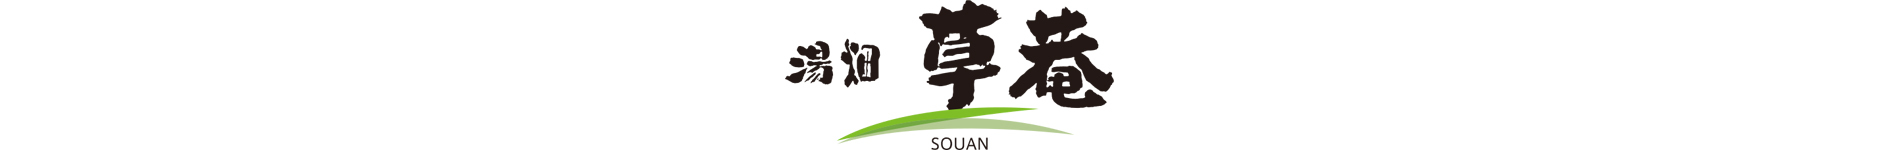 yubatakesoan logo